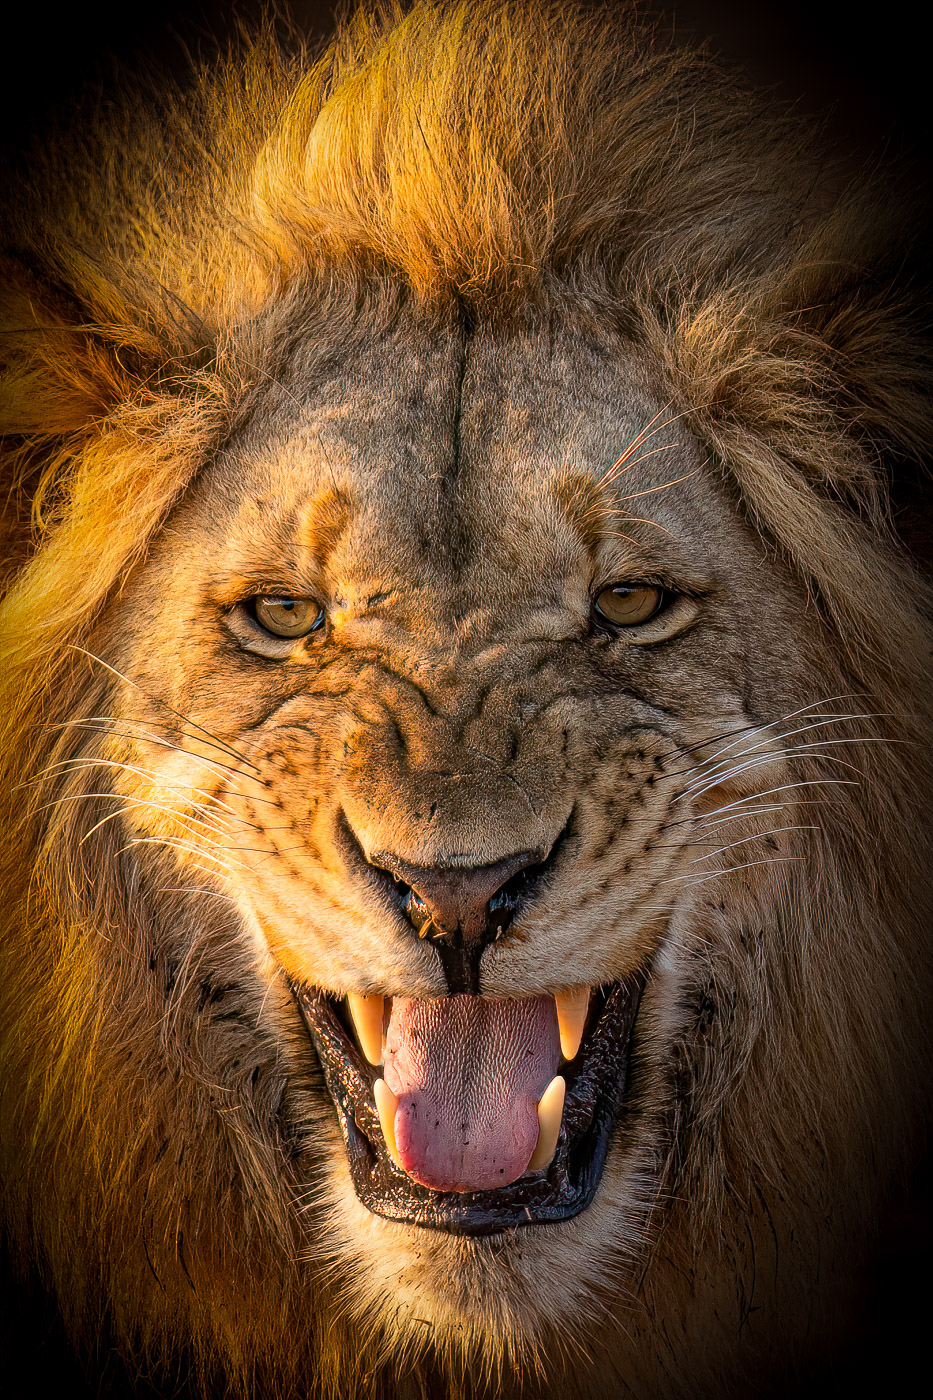 De extreme kracht van de leeuw in close-up